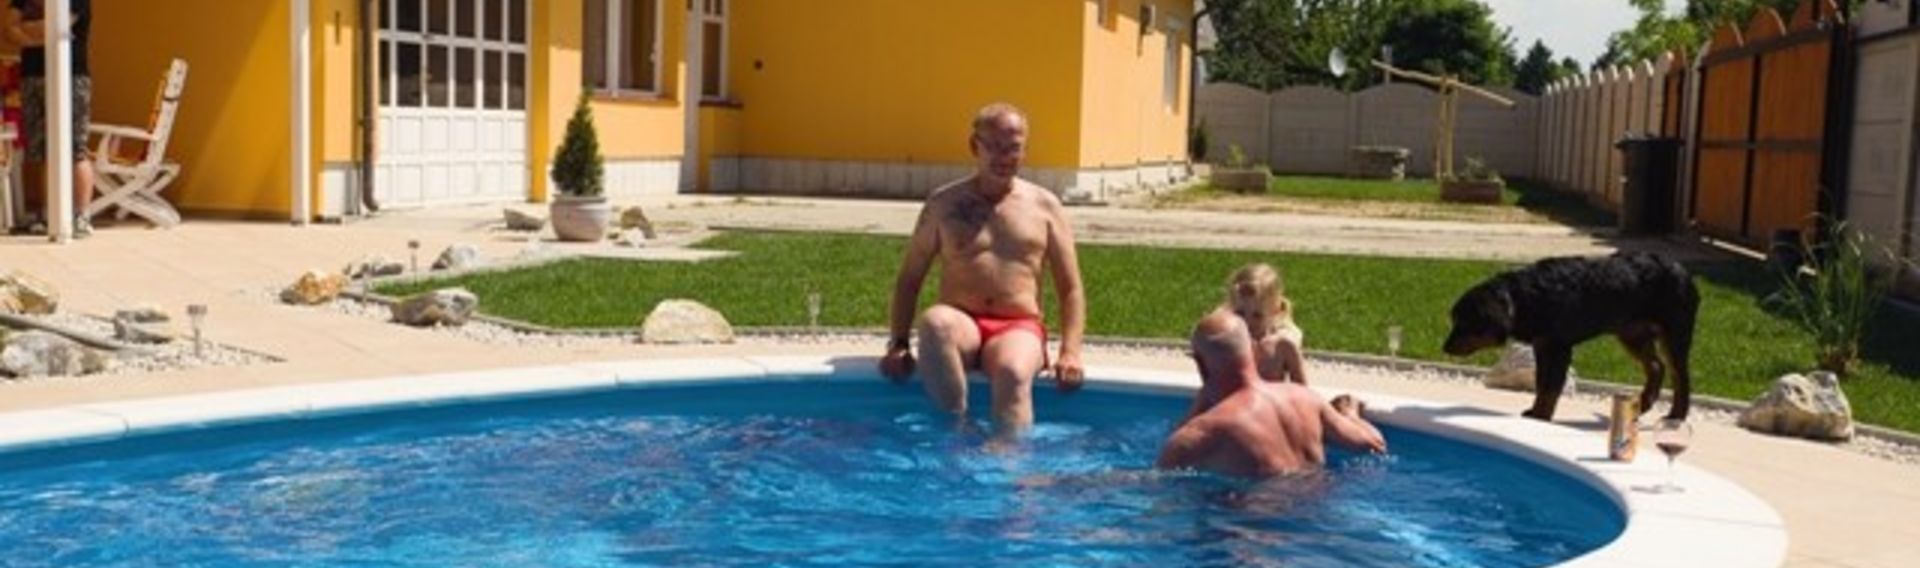 Ferien mit Hund in Ungarn, Ferienapartements für 1-16 Personen mit Pool